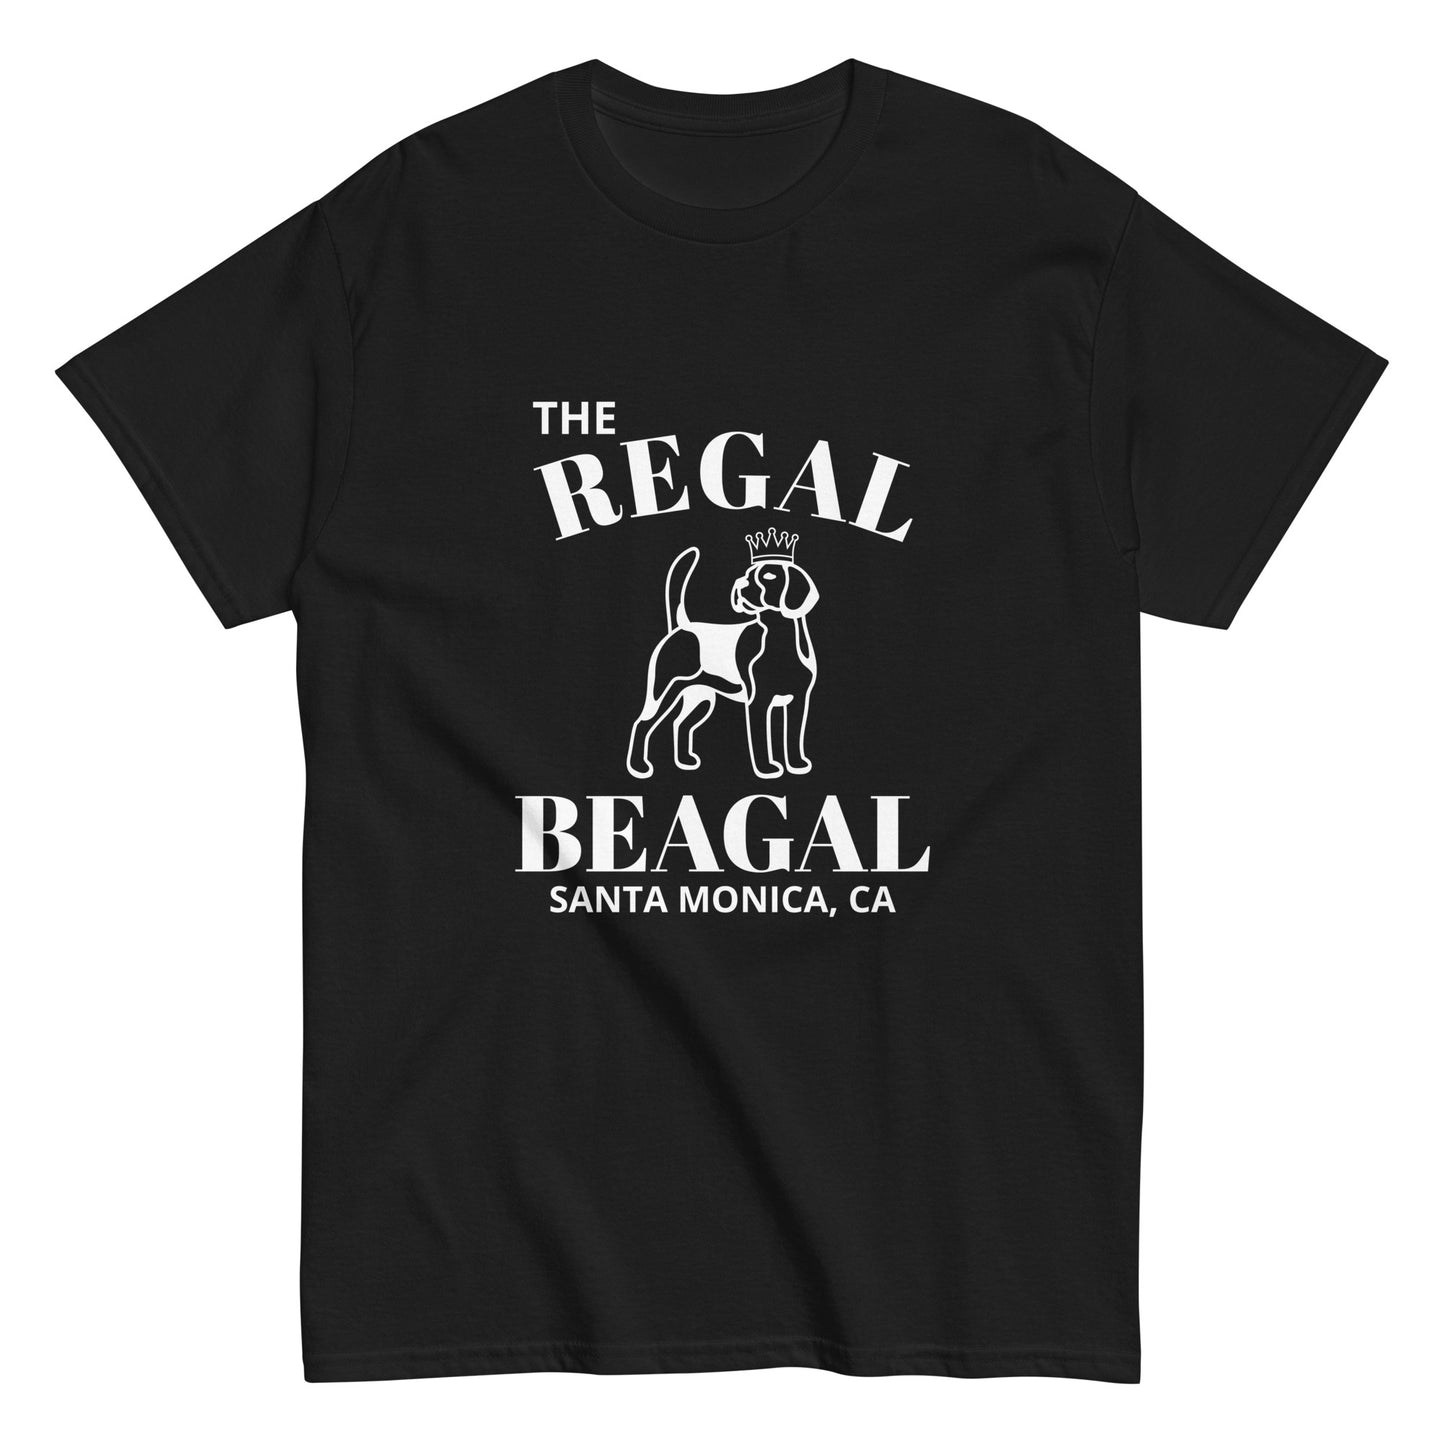 THE REGAL BEAGAL